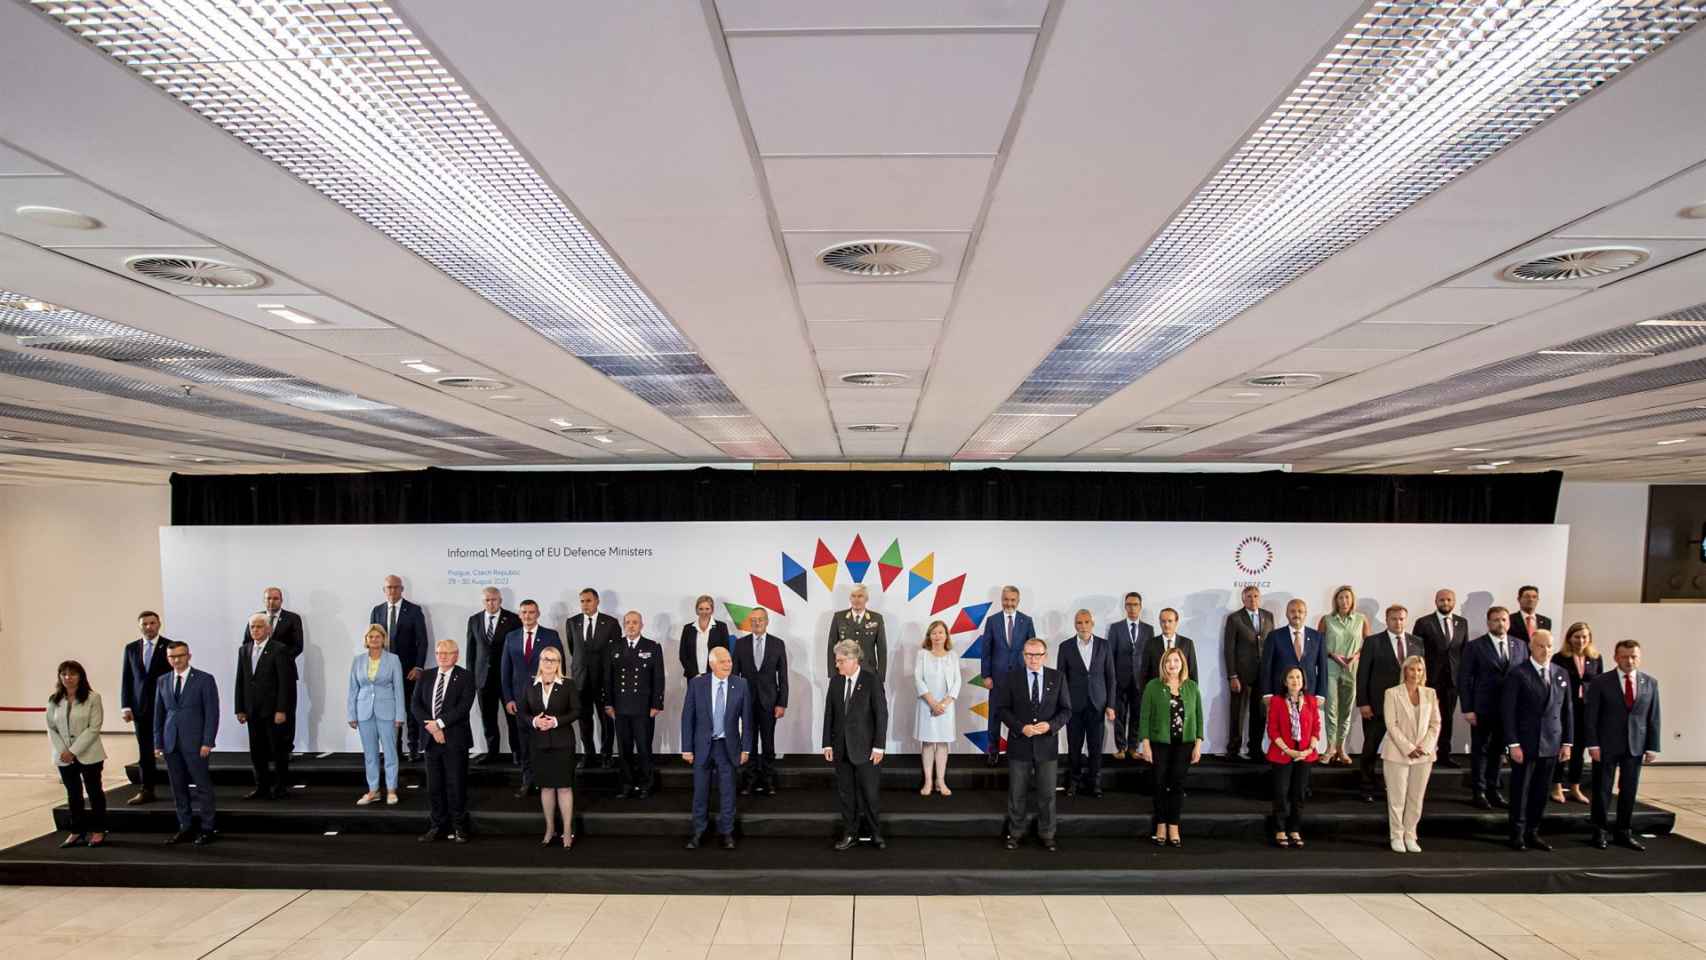 Los participantes posan para una foto familiar durante la Reunión Ministerial Europea de Defensa en Praga, República Checa, el 30 de agosto de 2022.